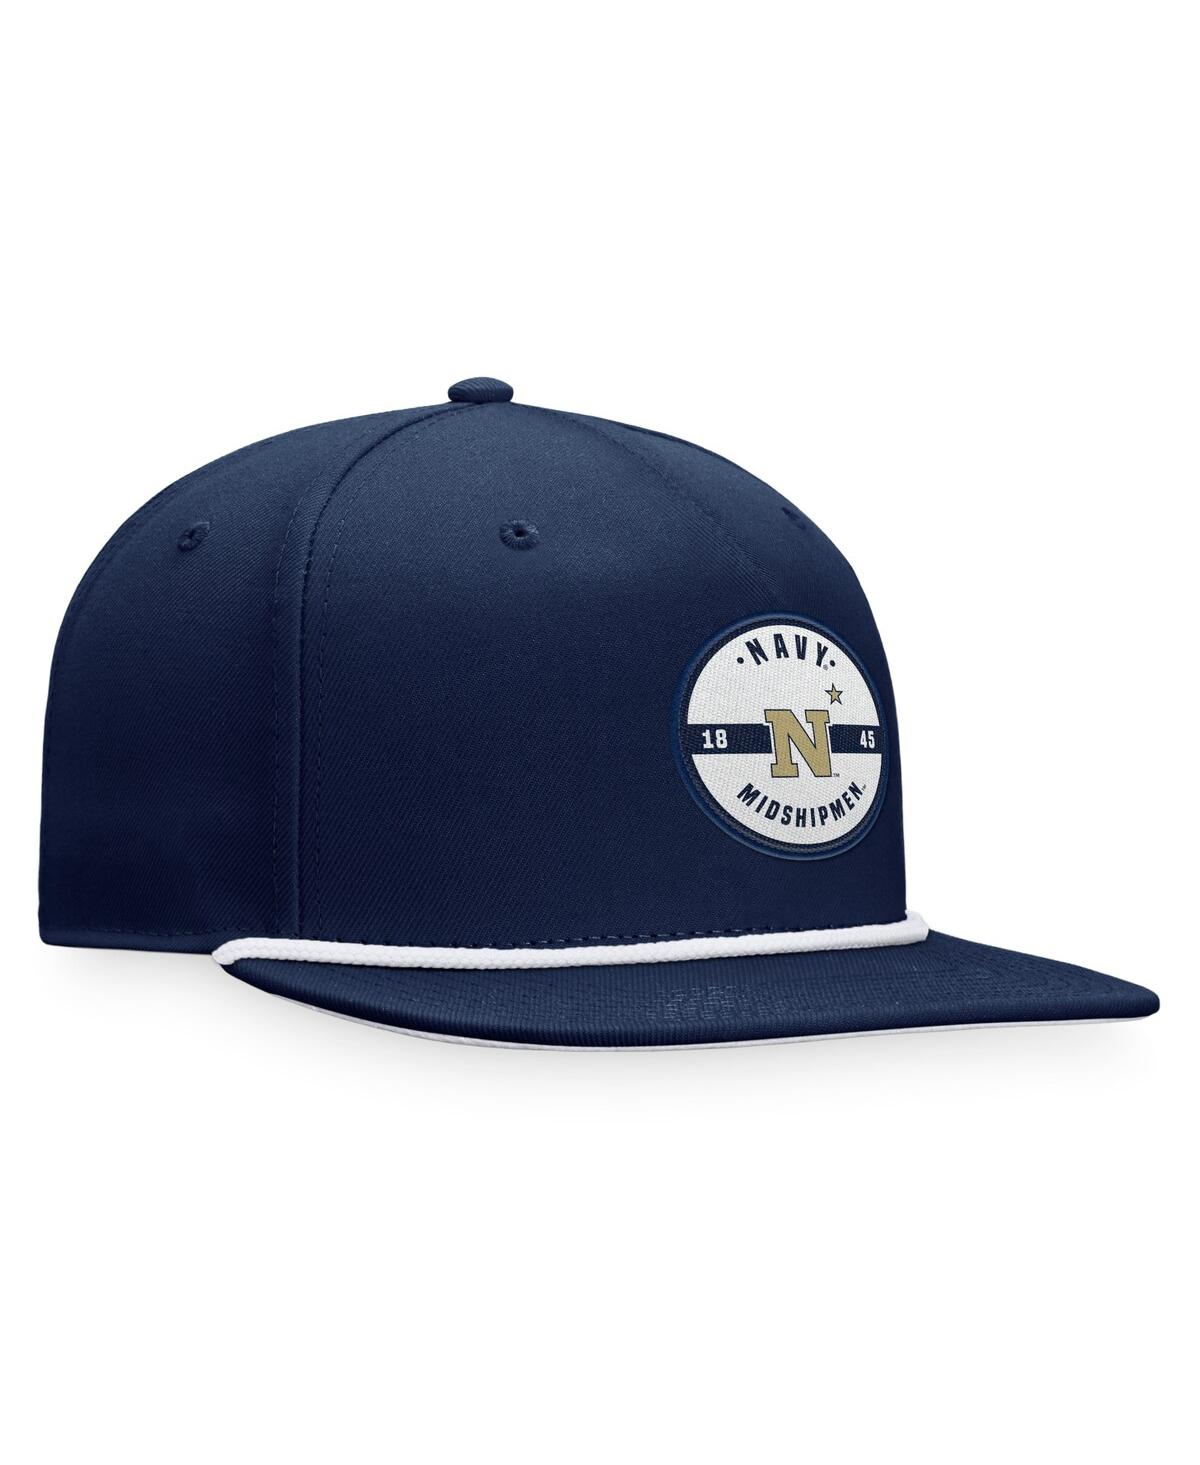 Shop Top Of The World Men's  Navy Navy Midshipmen Bank Hat